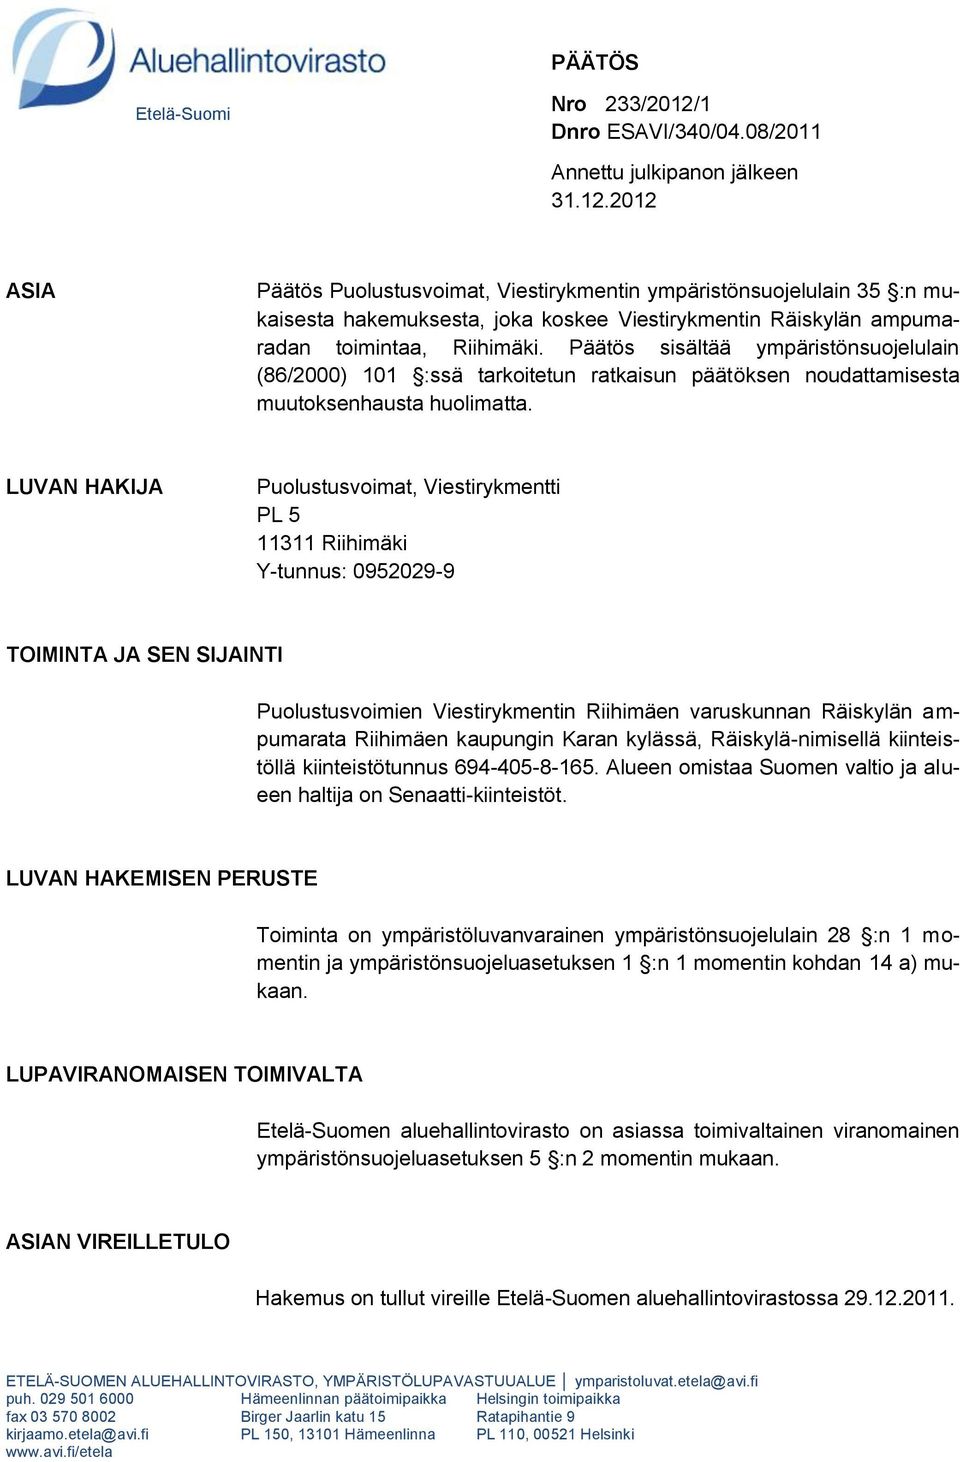 2012 ASIA Päätös Puolustusvoimat, Viestirykmentin ympäristönsuojelulain 35 :n mukaisesta hakemuksesta, joka koskee Viestirykmentin Räiskylän ampumaradan toimintaa, Riihimäki.